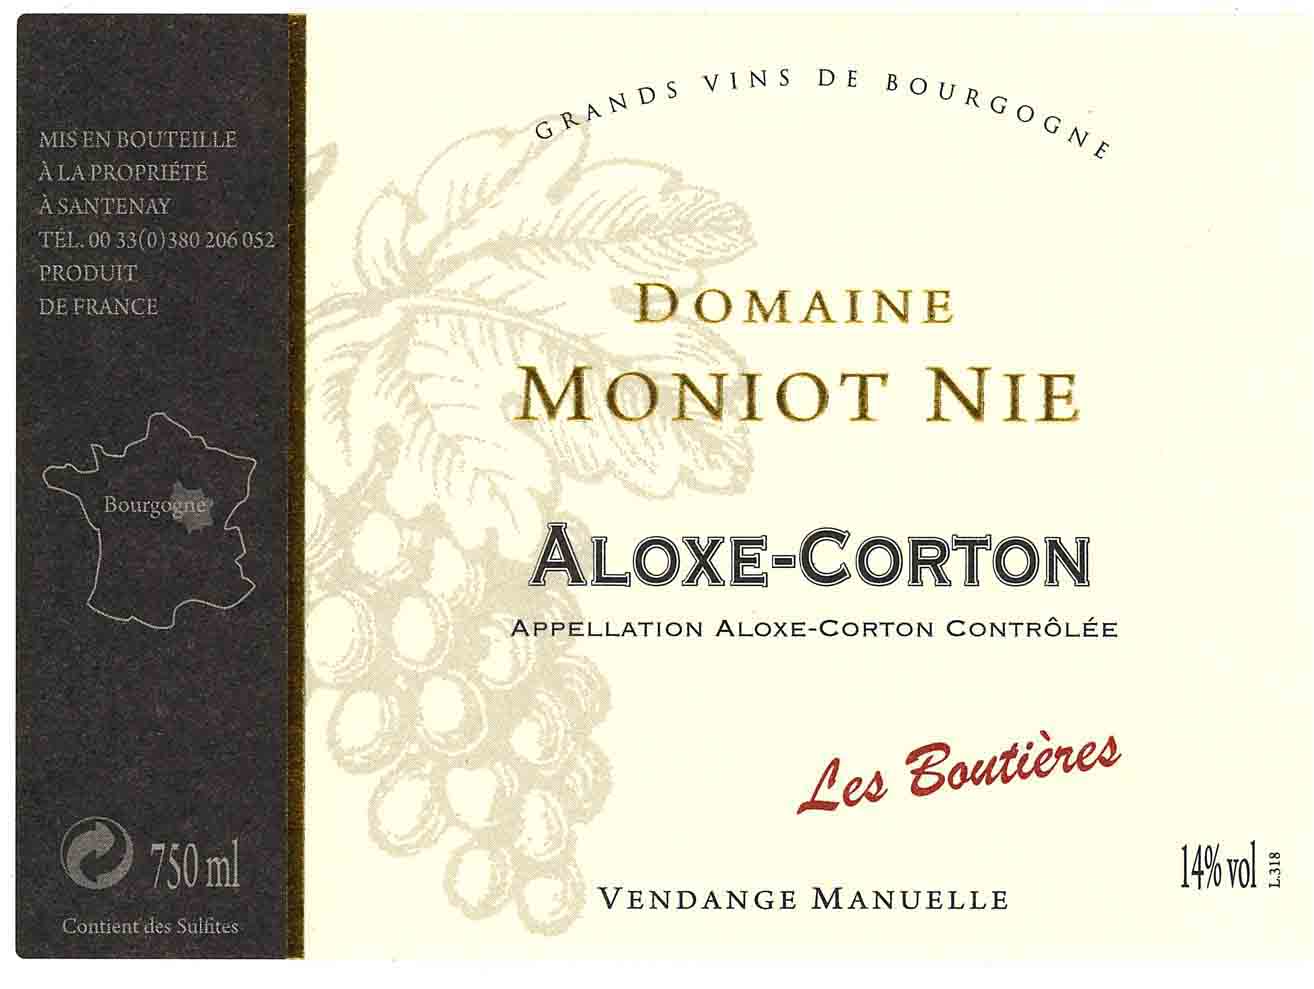 Domaine Moniot-Nie - Aloxe-Corton label